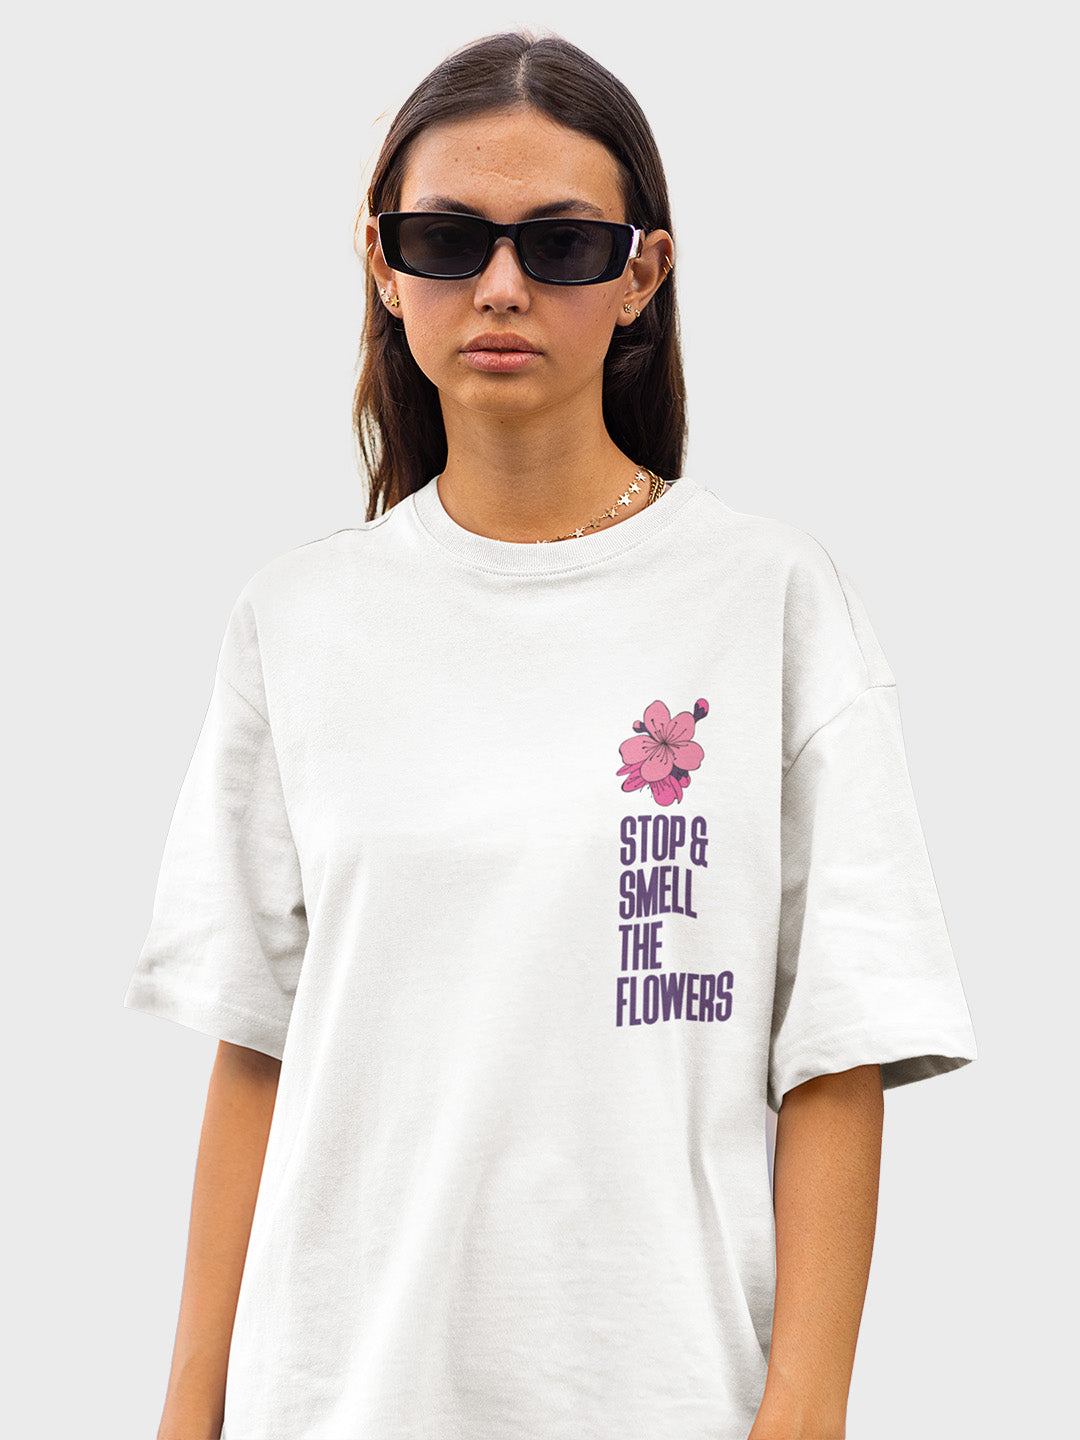 Stop & Smell the Flower's Women's Mandala Design Oversized T-Shirt